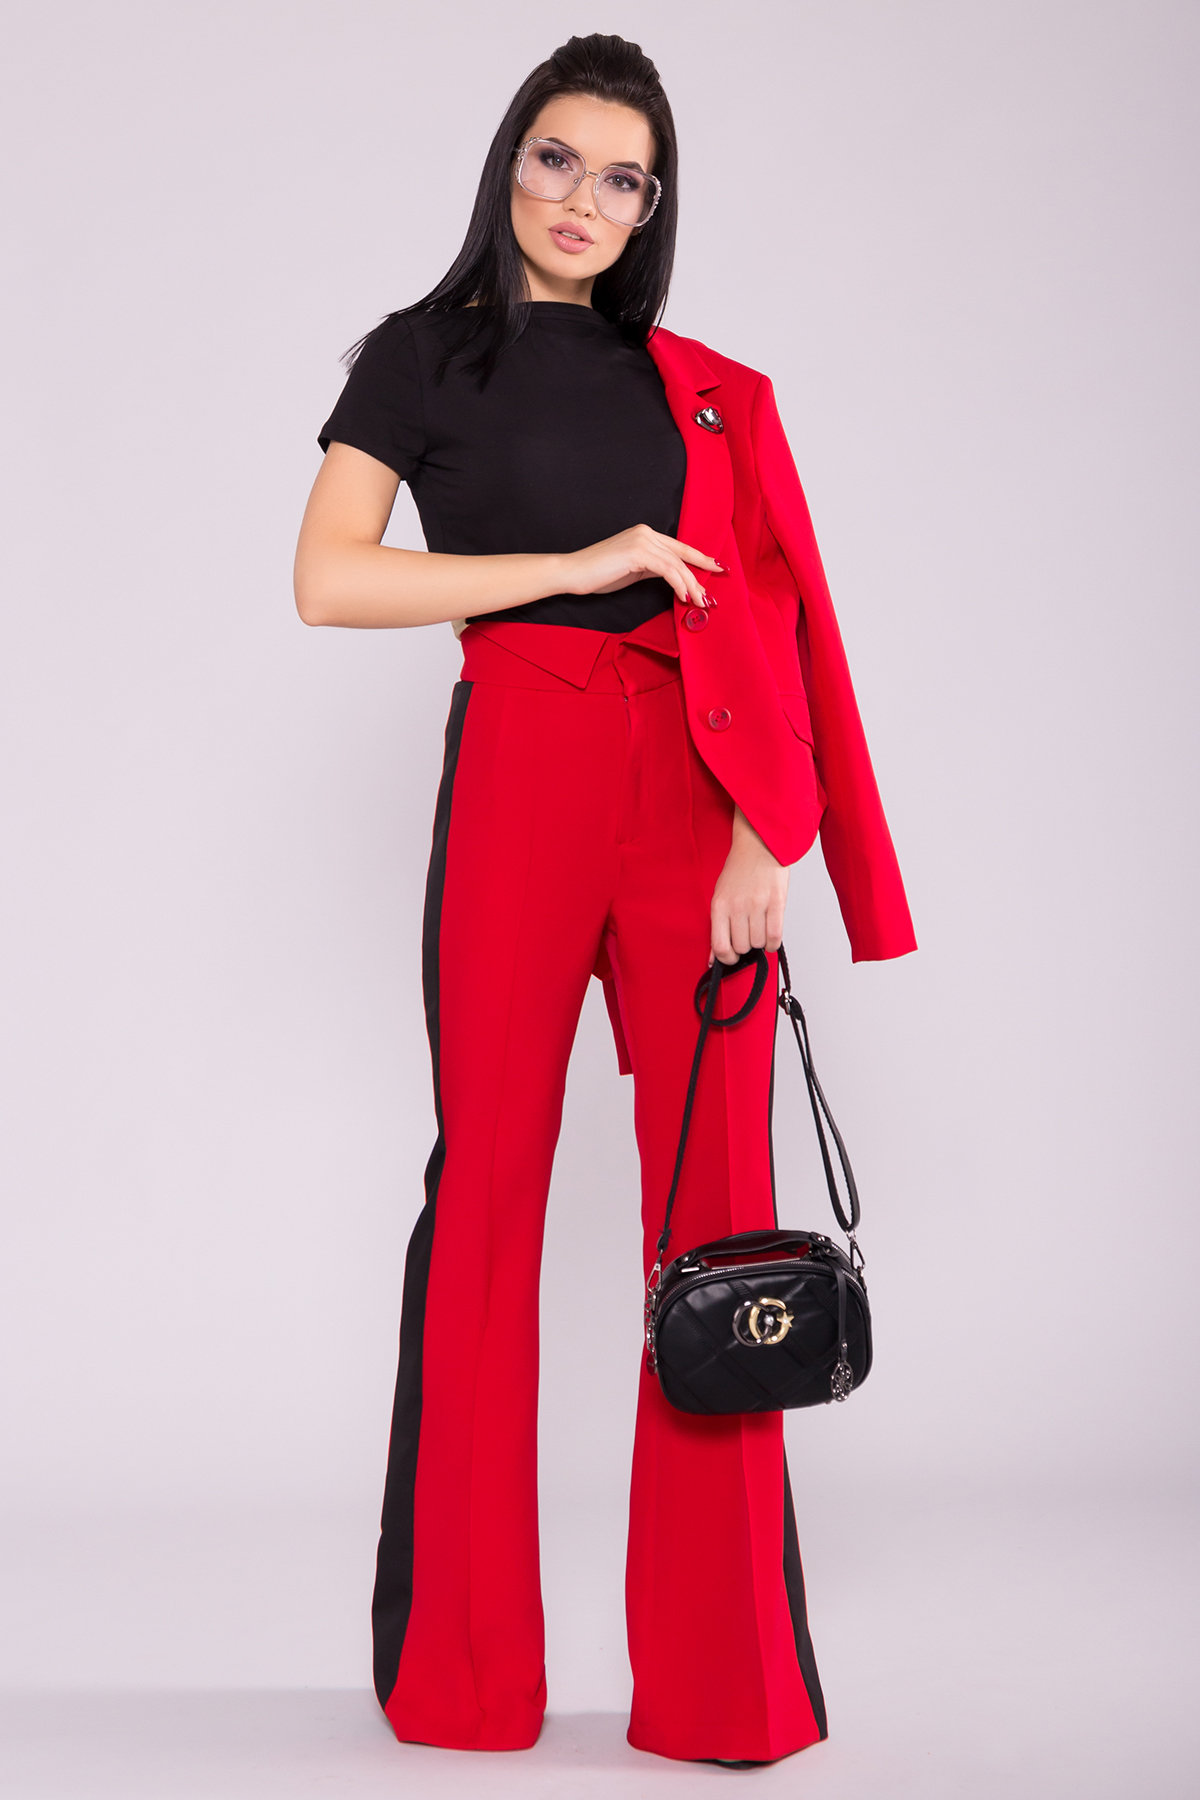 Локи костюм жакет   брюки из костюмной ткани 6964 АРТ. 42088 Цвет: Красный/черный - фото 1, интернет магазин tm-modus.ru